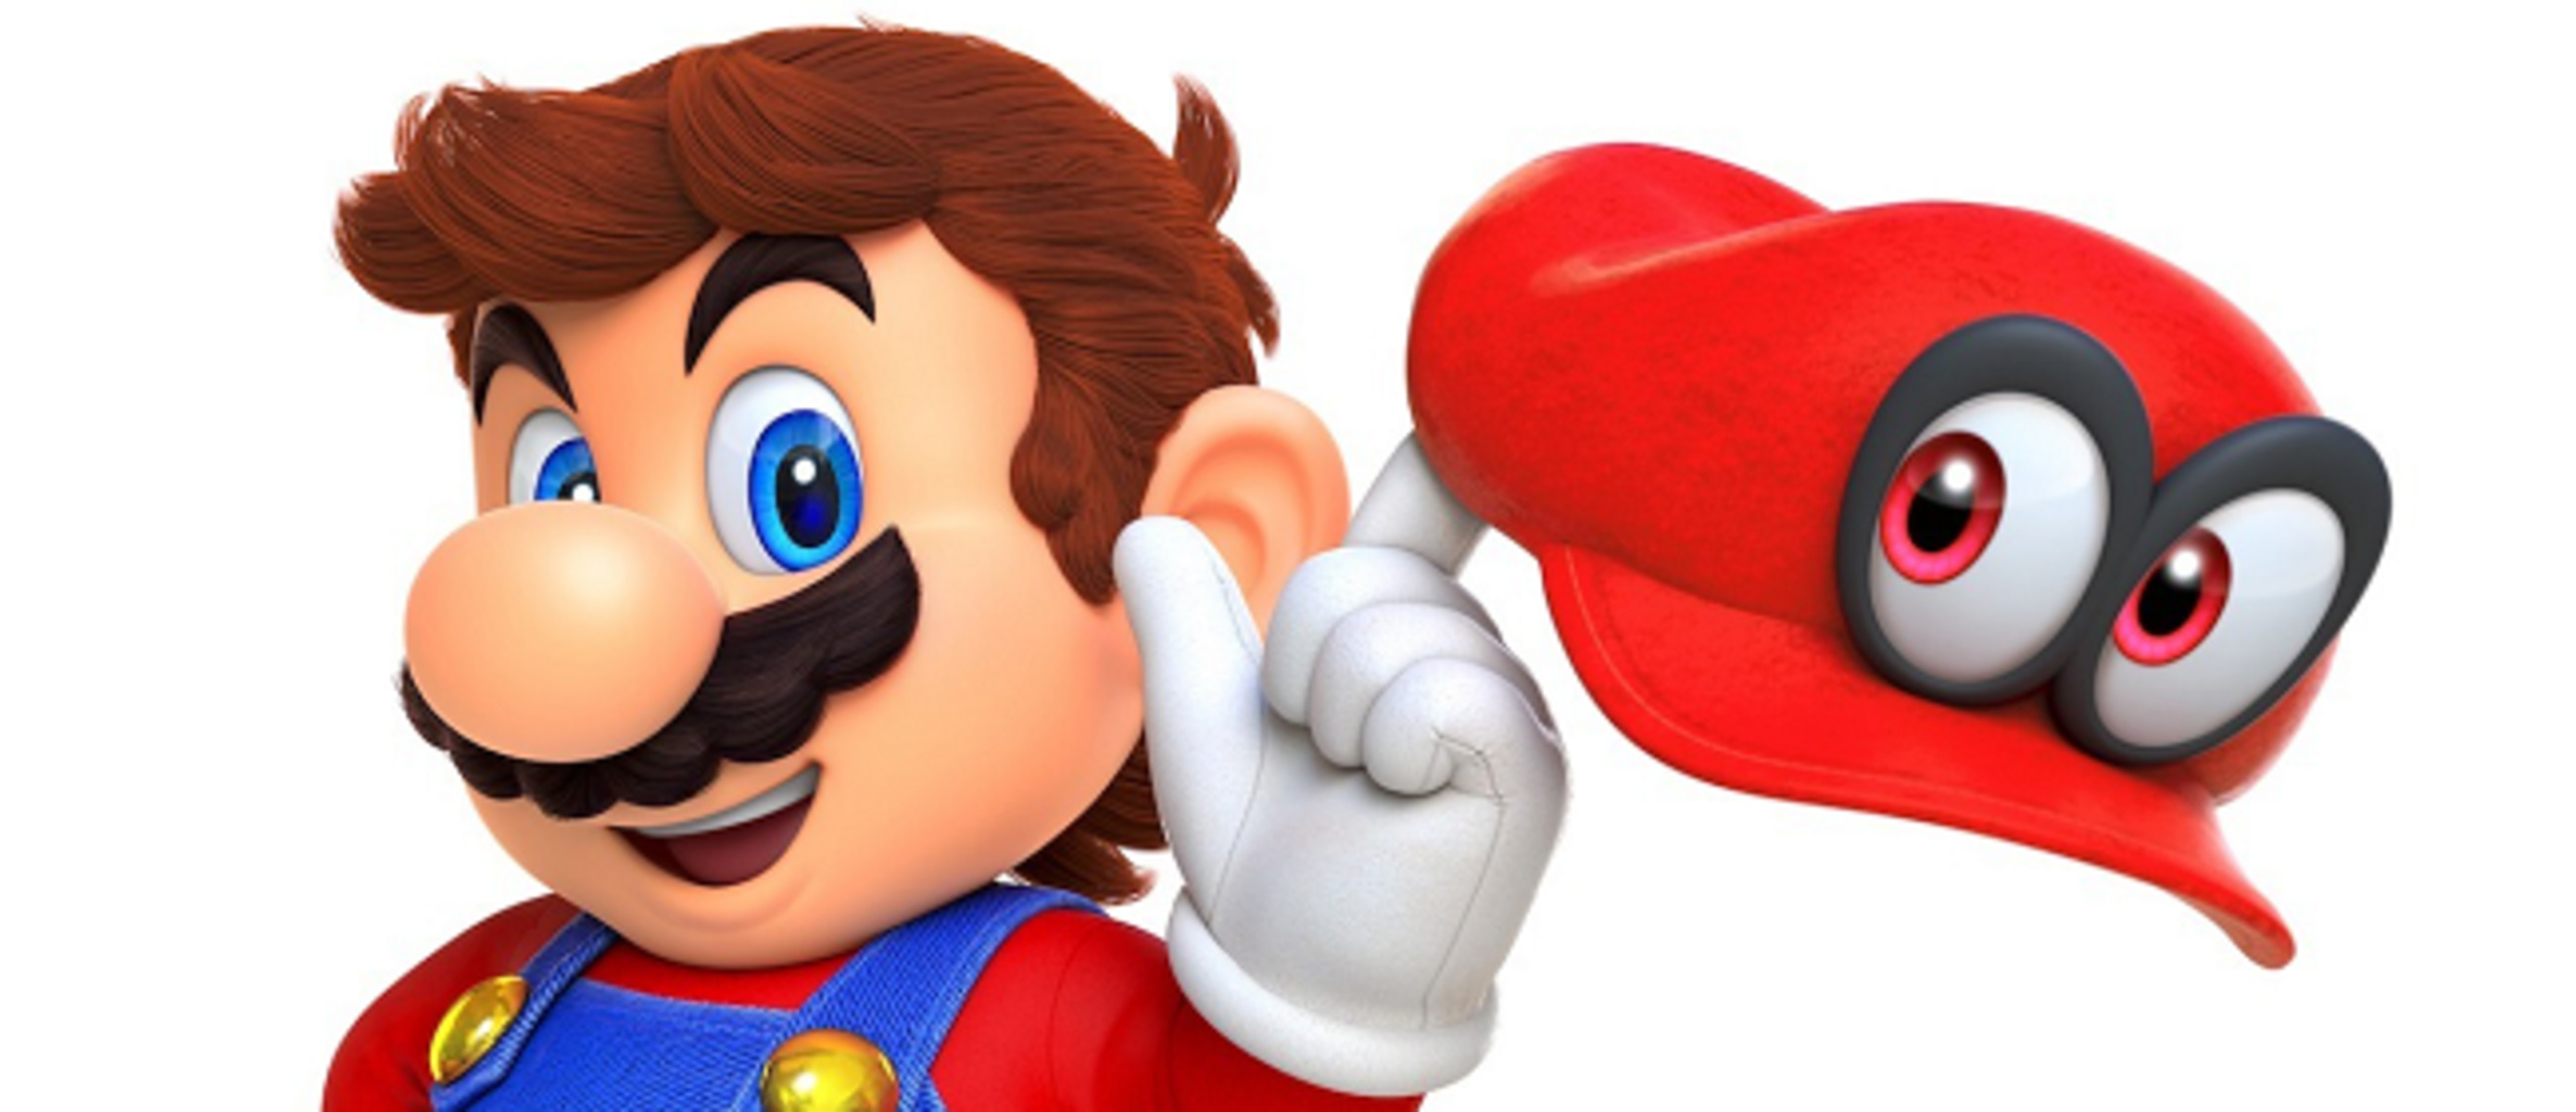 Марио одиси. Super Mario Odyssey. Super Mario Odyssey Cappy. Игрушки супер Марио Одиссей. Super Mario Odyssey Cappy игрушка.